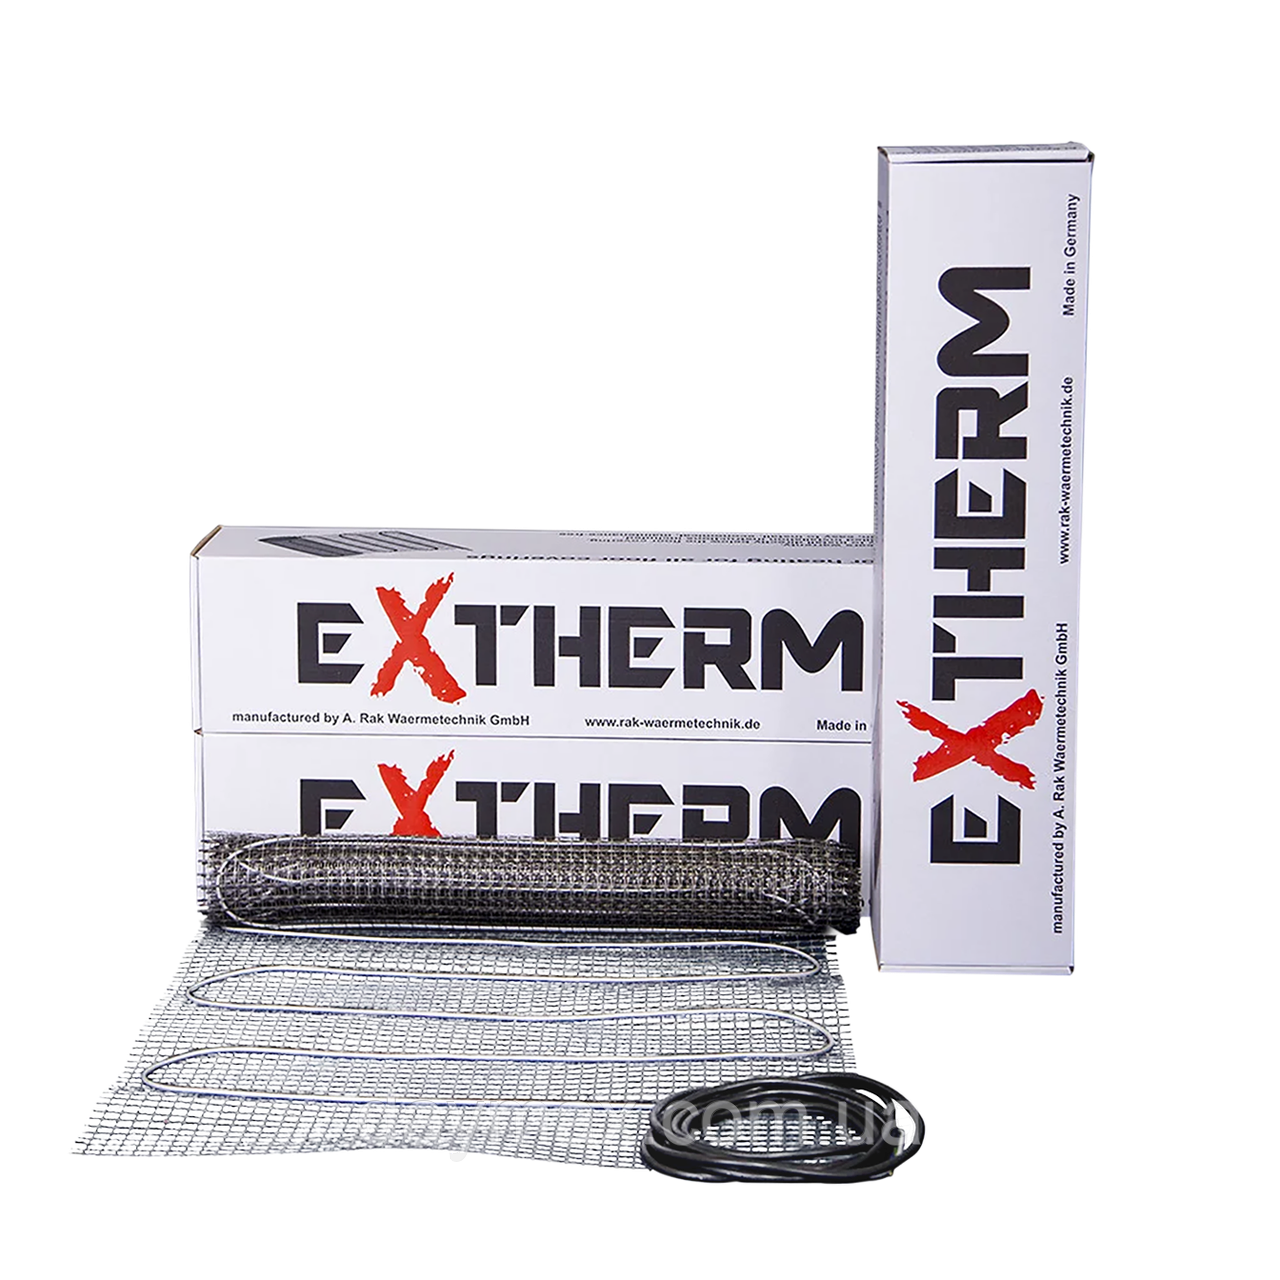 Нагрівальний мат одножильний Extherm ETL 350-200